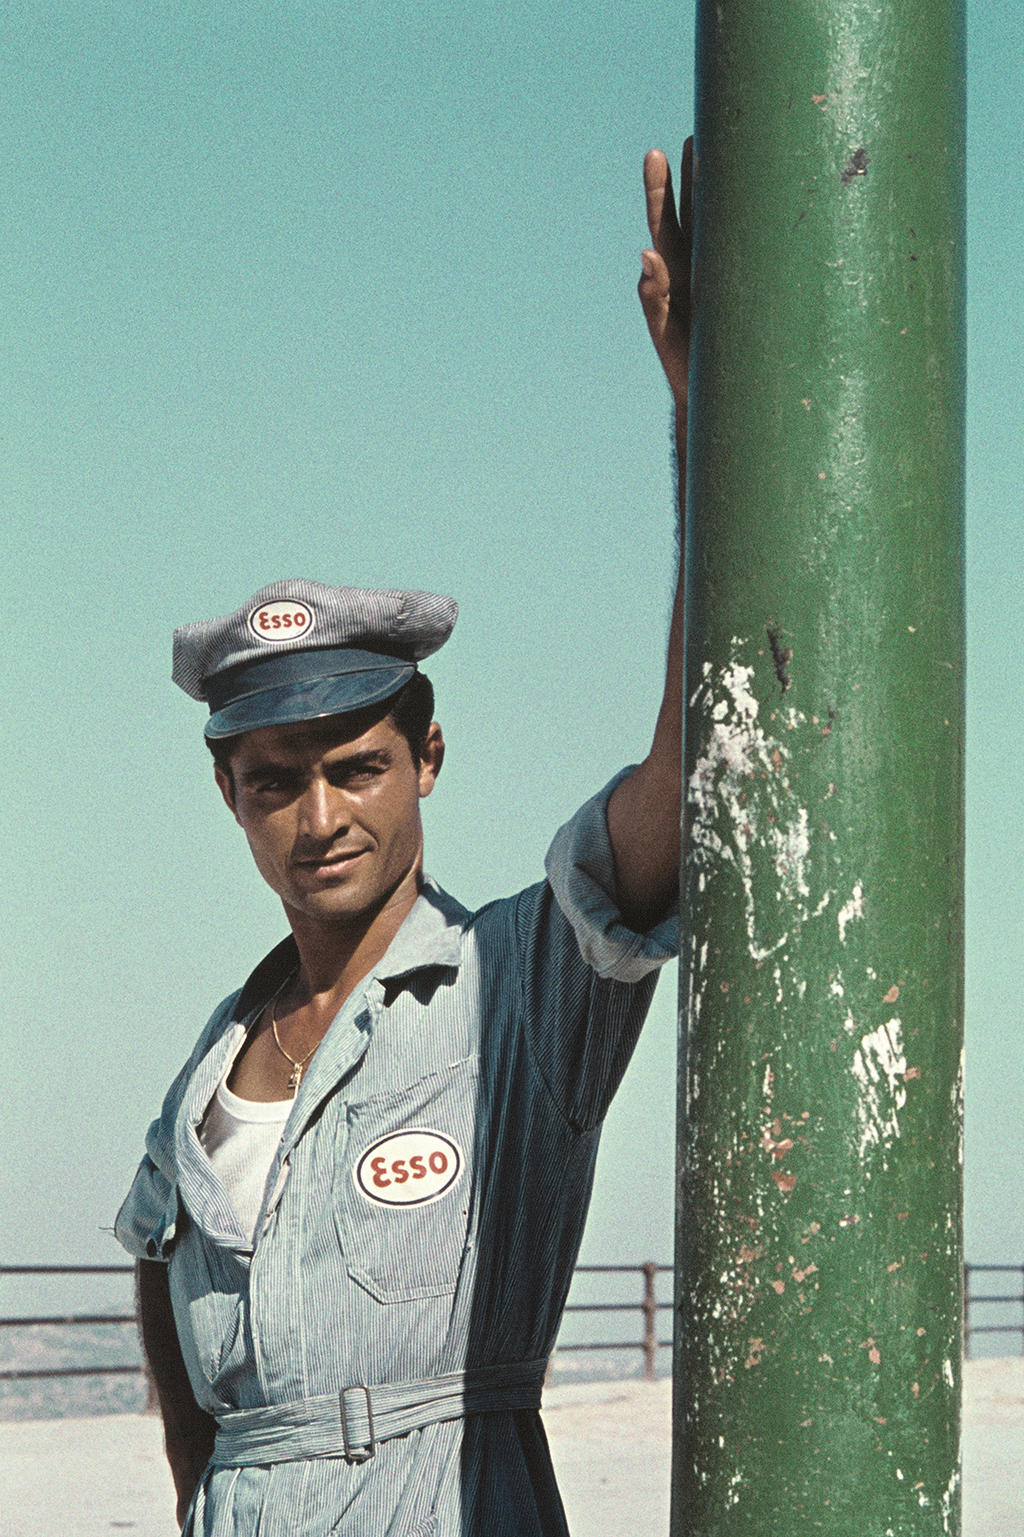 Homem vestindo um uniforme de posto de gasolina Esso, apoiado a um poste